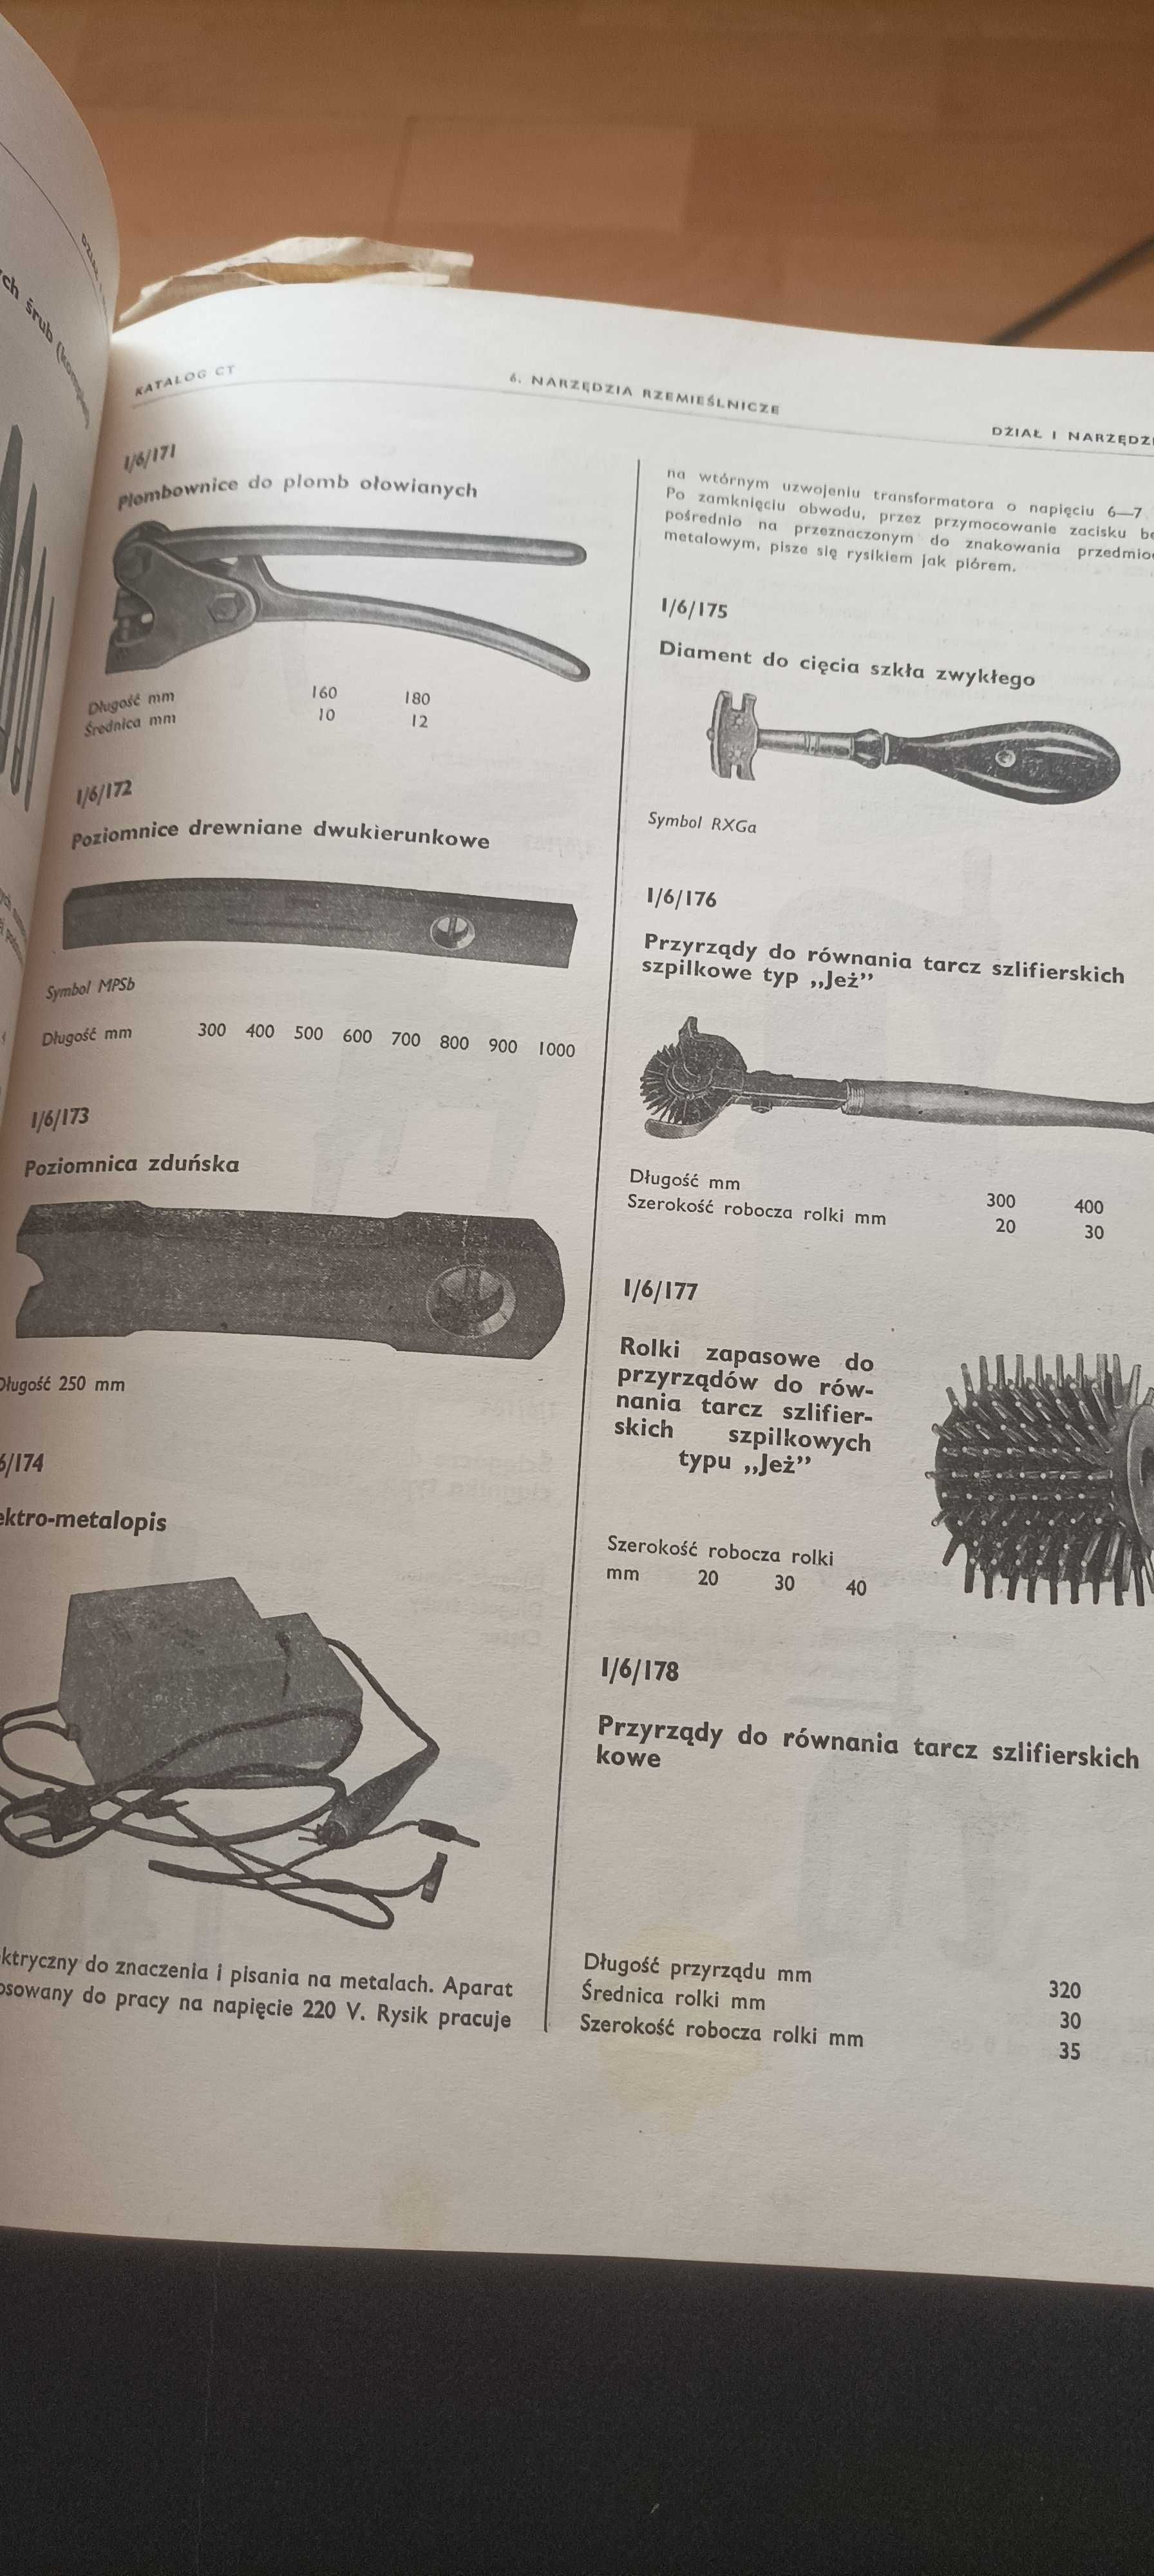 Katalog narzędzi centrala techniczna prawie 900 strony